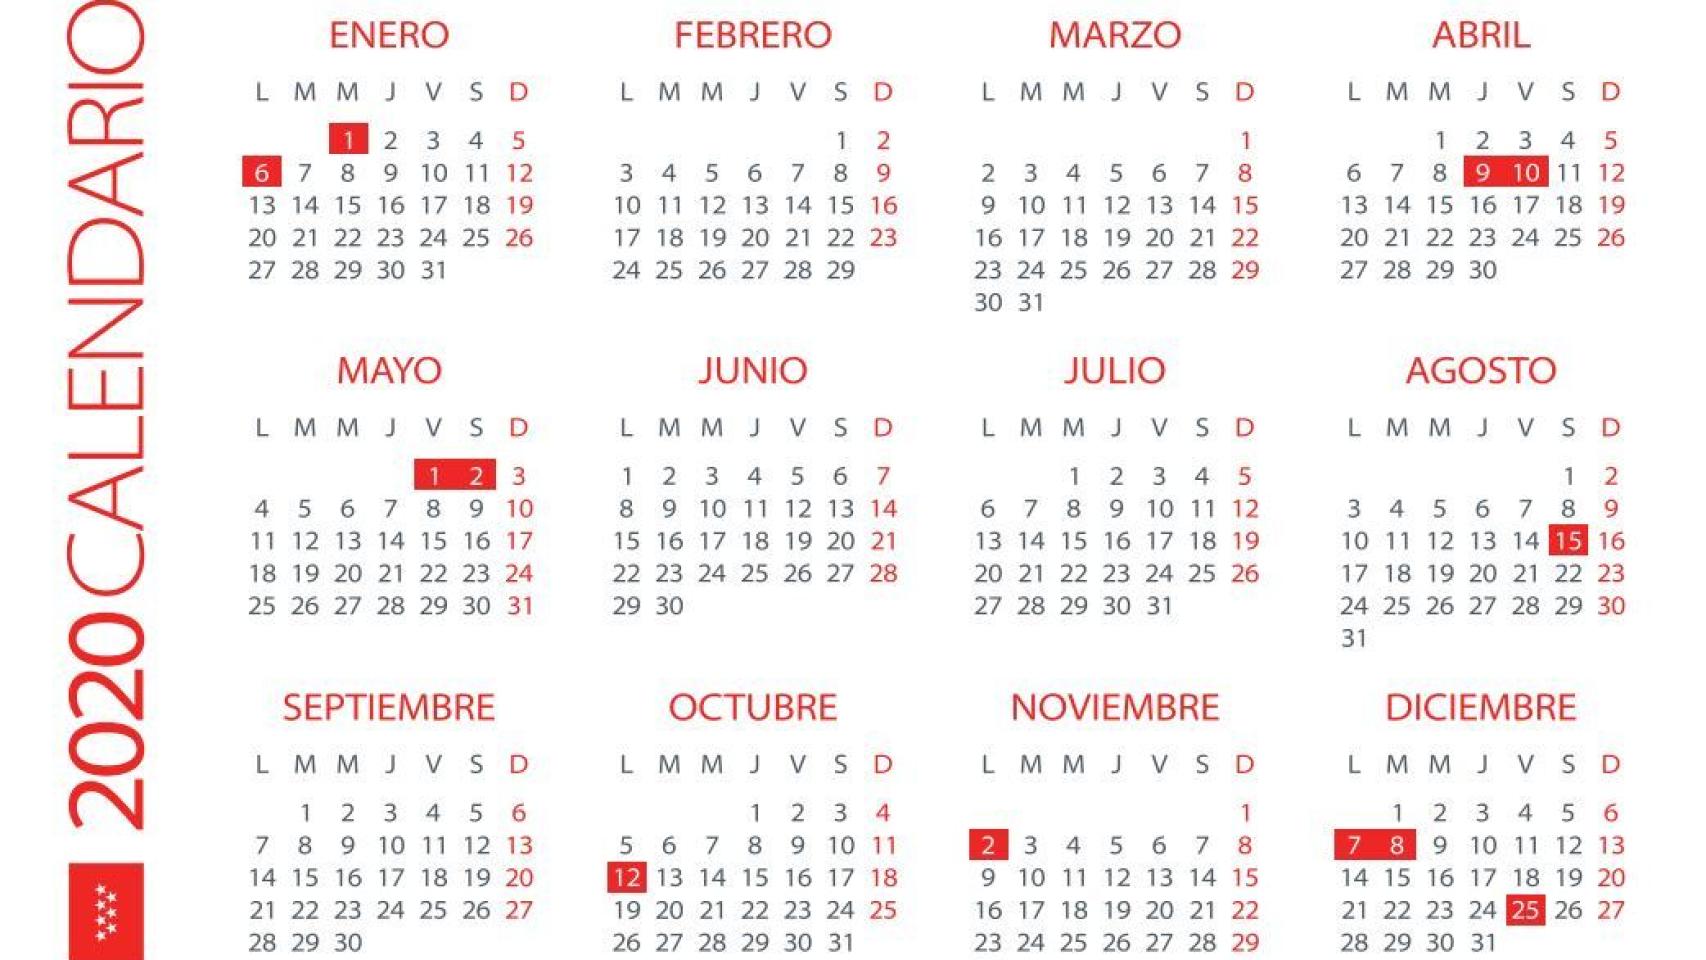 Este es el calendario de festivos de la Comunidad de Madrid para el año 2020